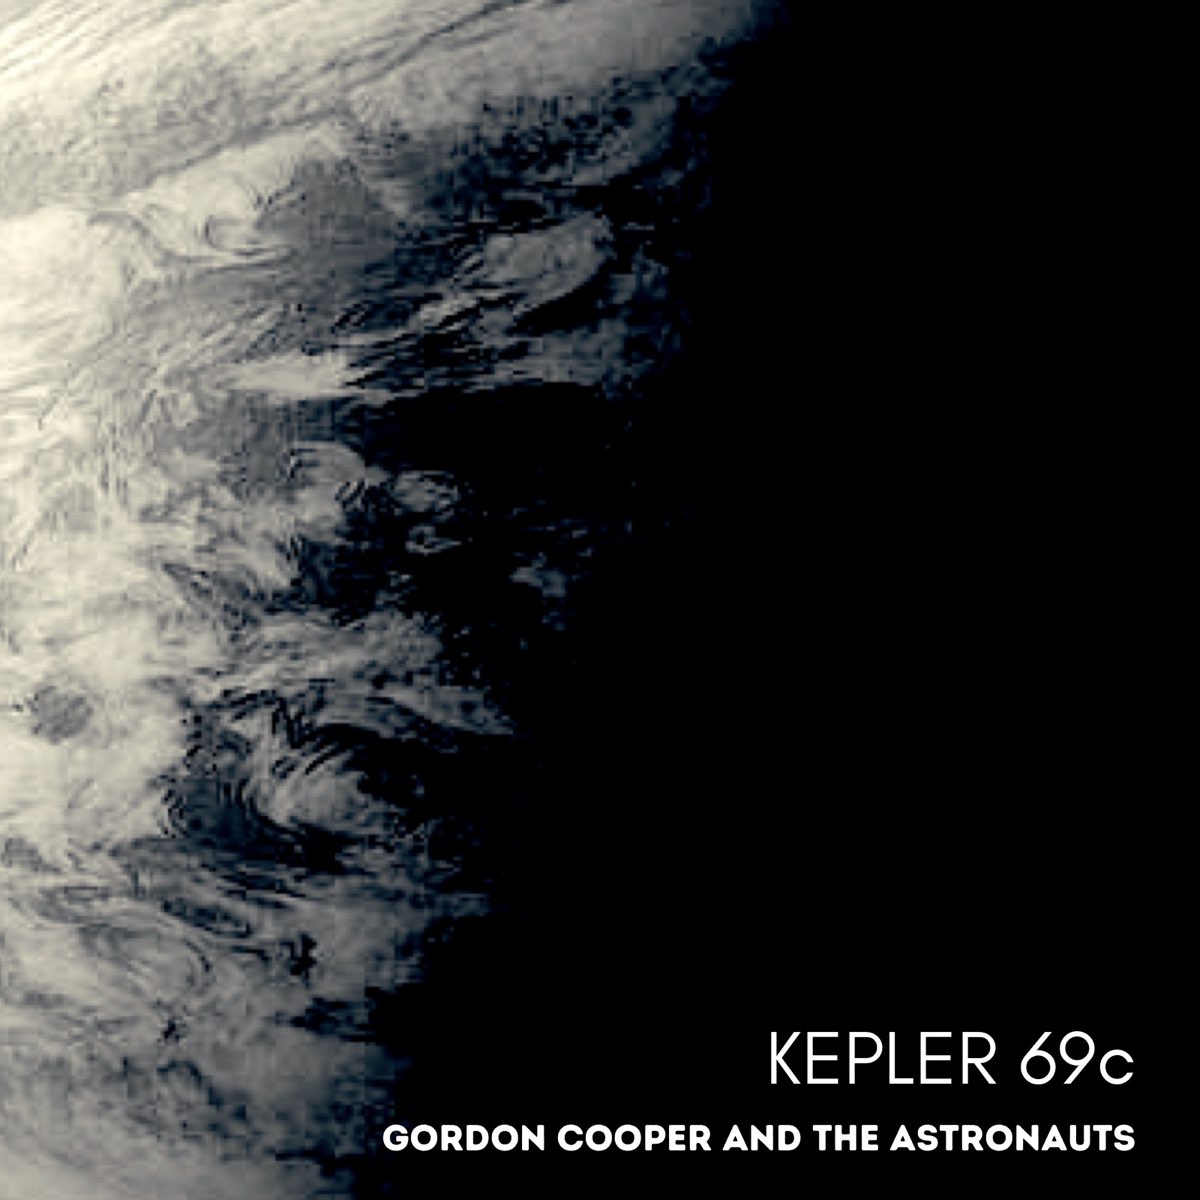 Thực sự có sự sống tồn tại trên Kepler 69c không? - Ảnh 4.